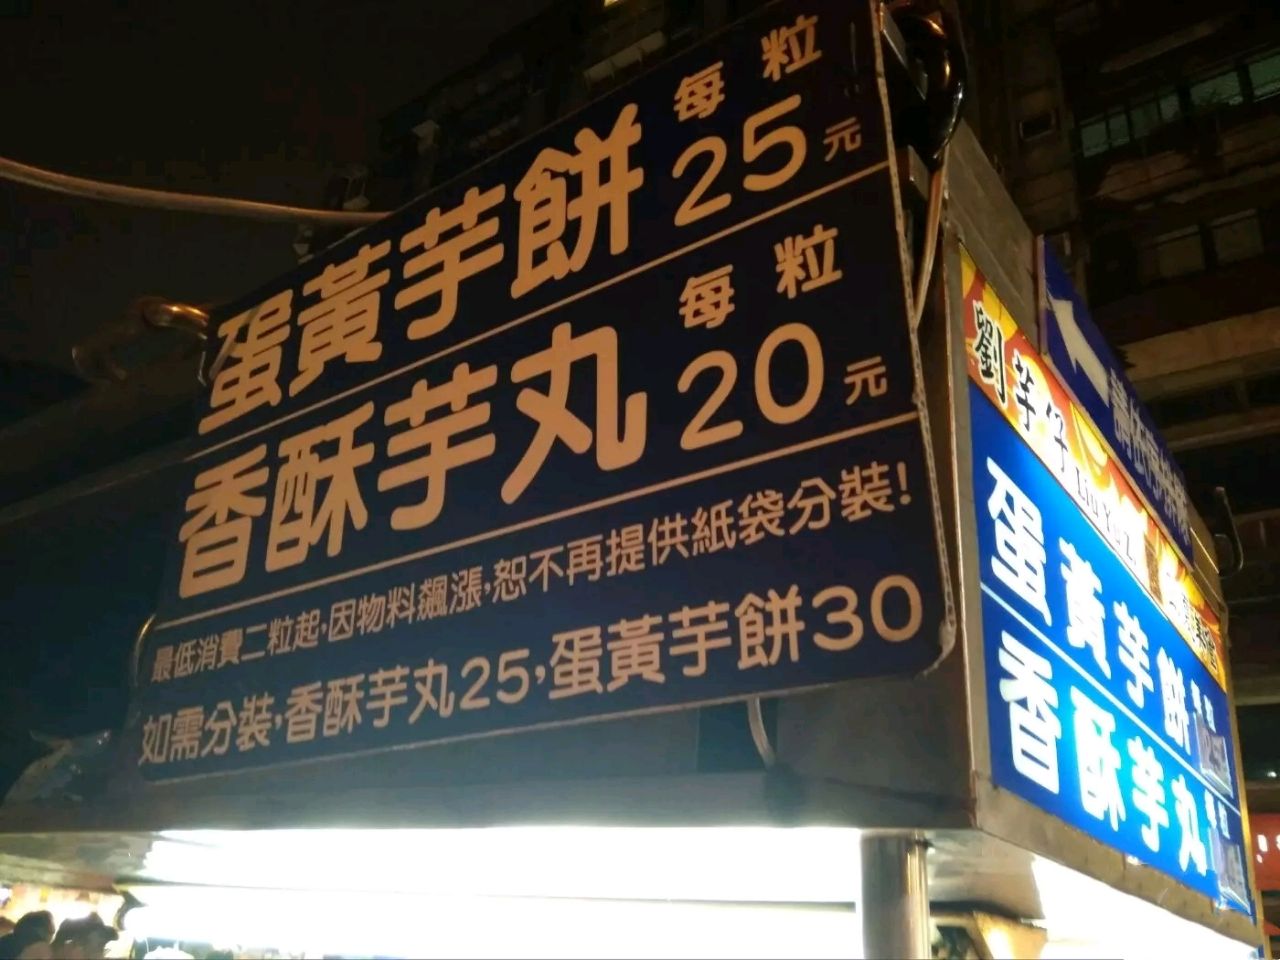 2023刘芋仔蛋黄芋饼美食餐厅,是从本地人口中听说宁夏夜市...【去哪儿攻略】